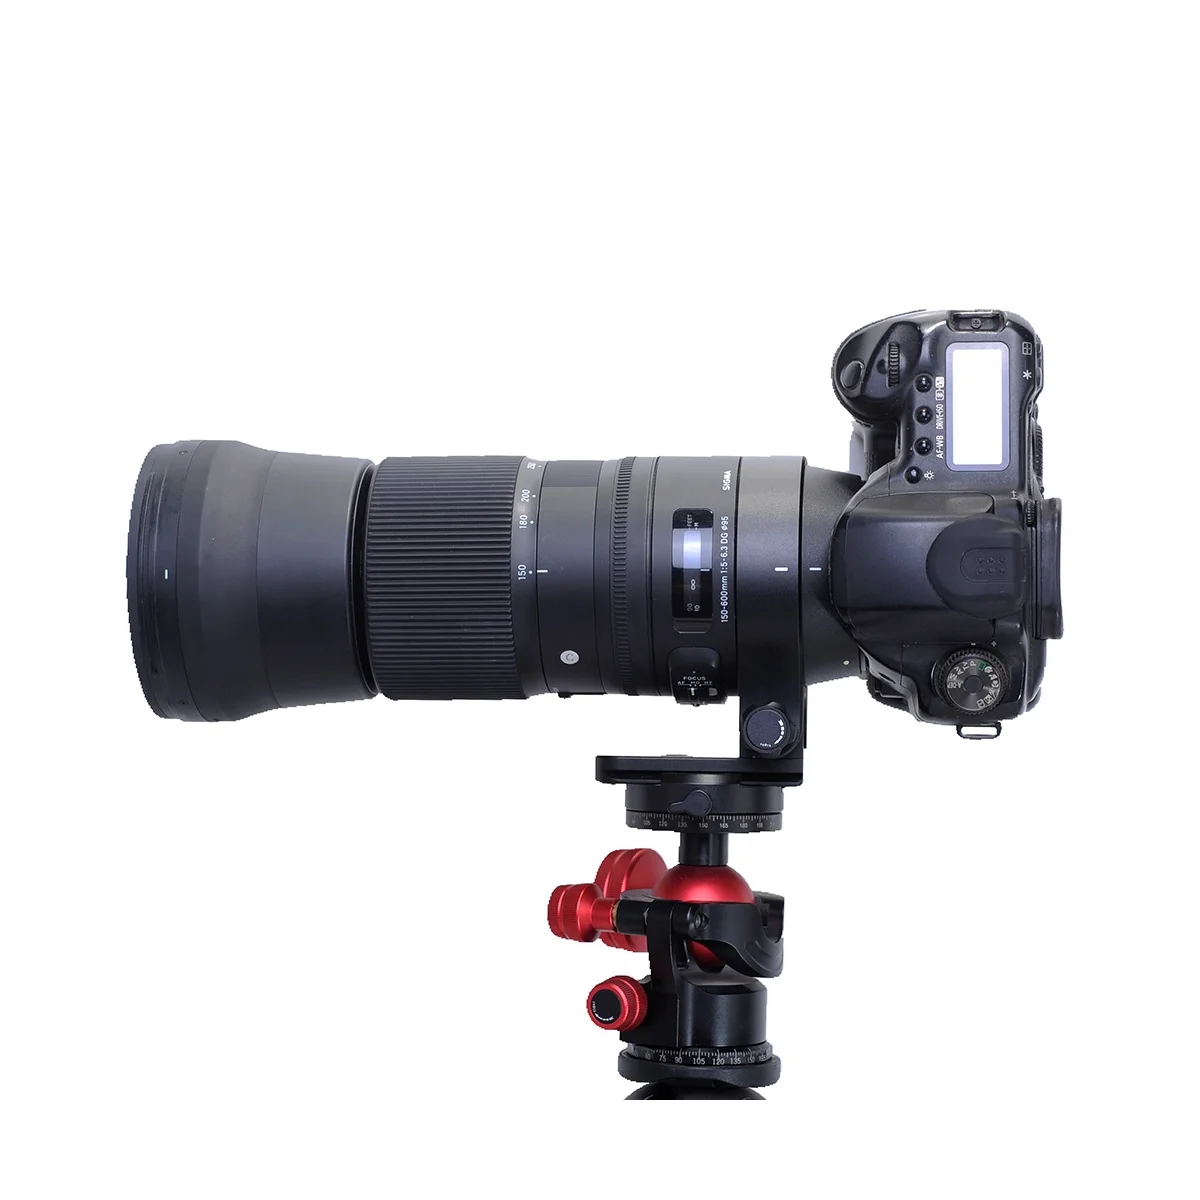 Кольцо Для крепления штатива объектива IS-SM1560C, Кольцевой Кронштейн для объектива SIGMA 150-600 мм F5-6.3 DG OS HSM C, Объектив камеры 2